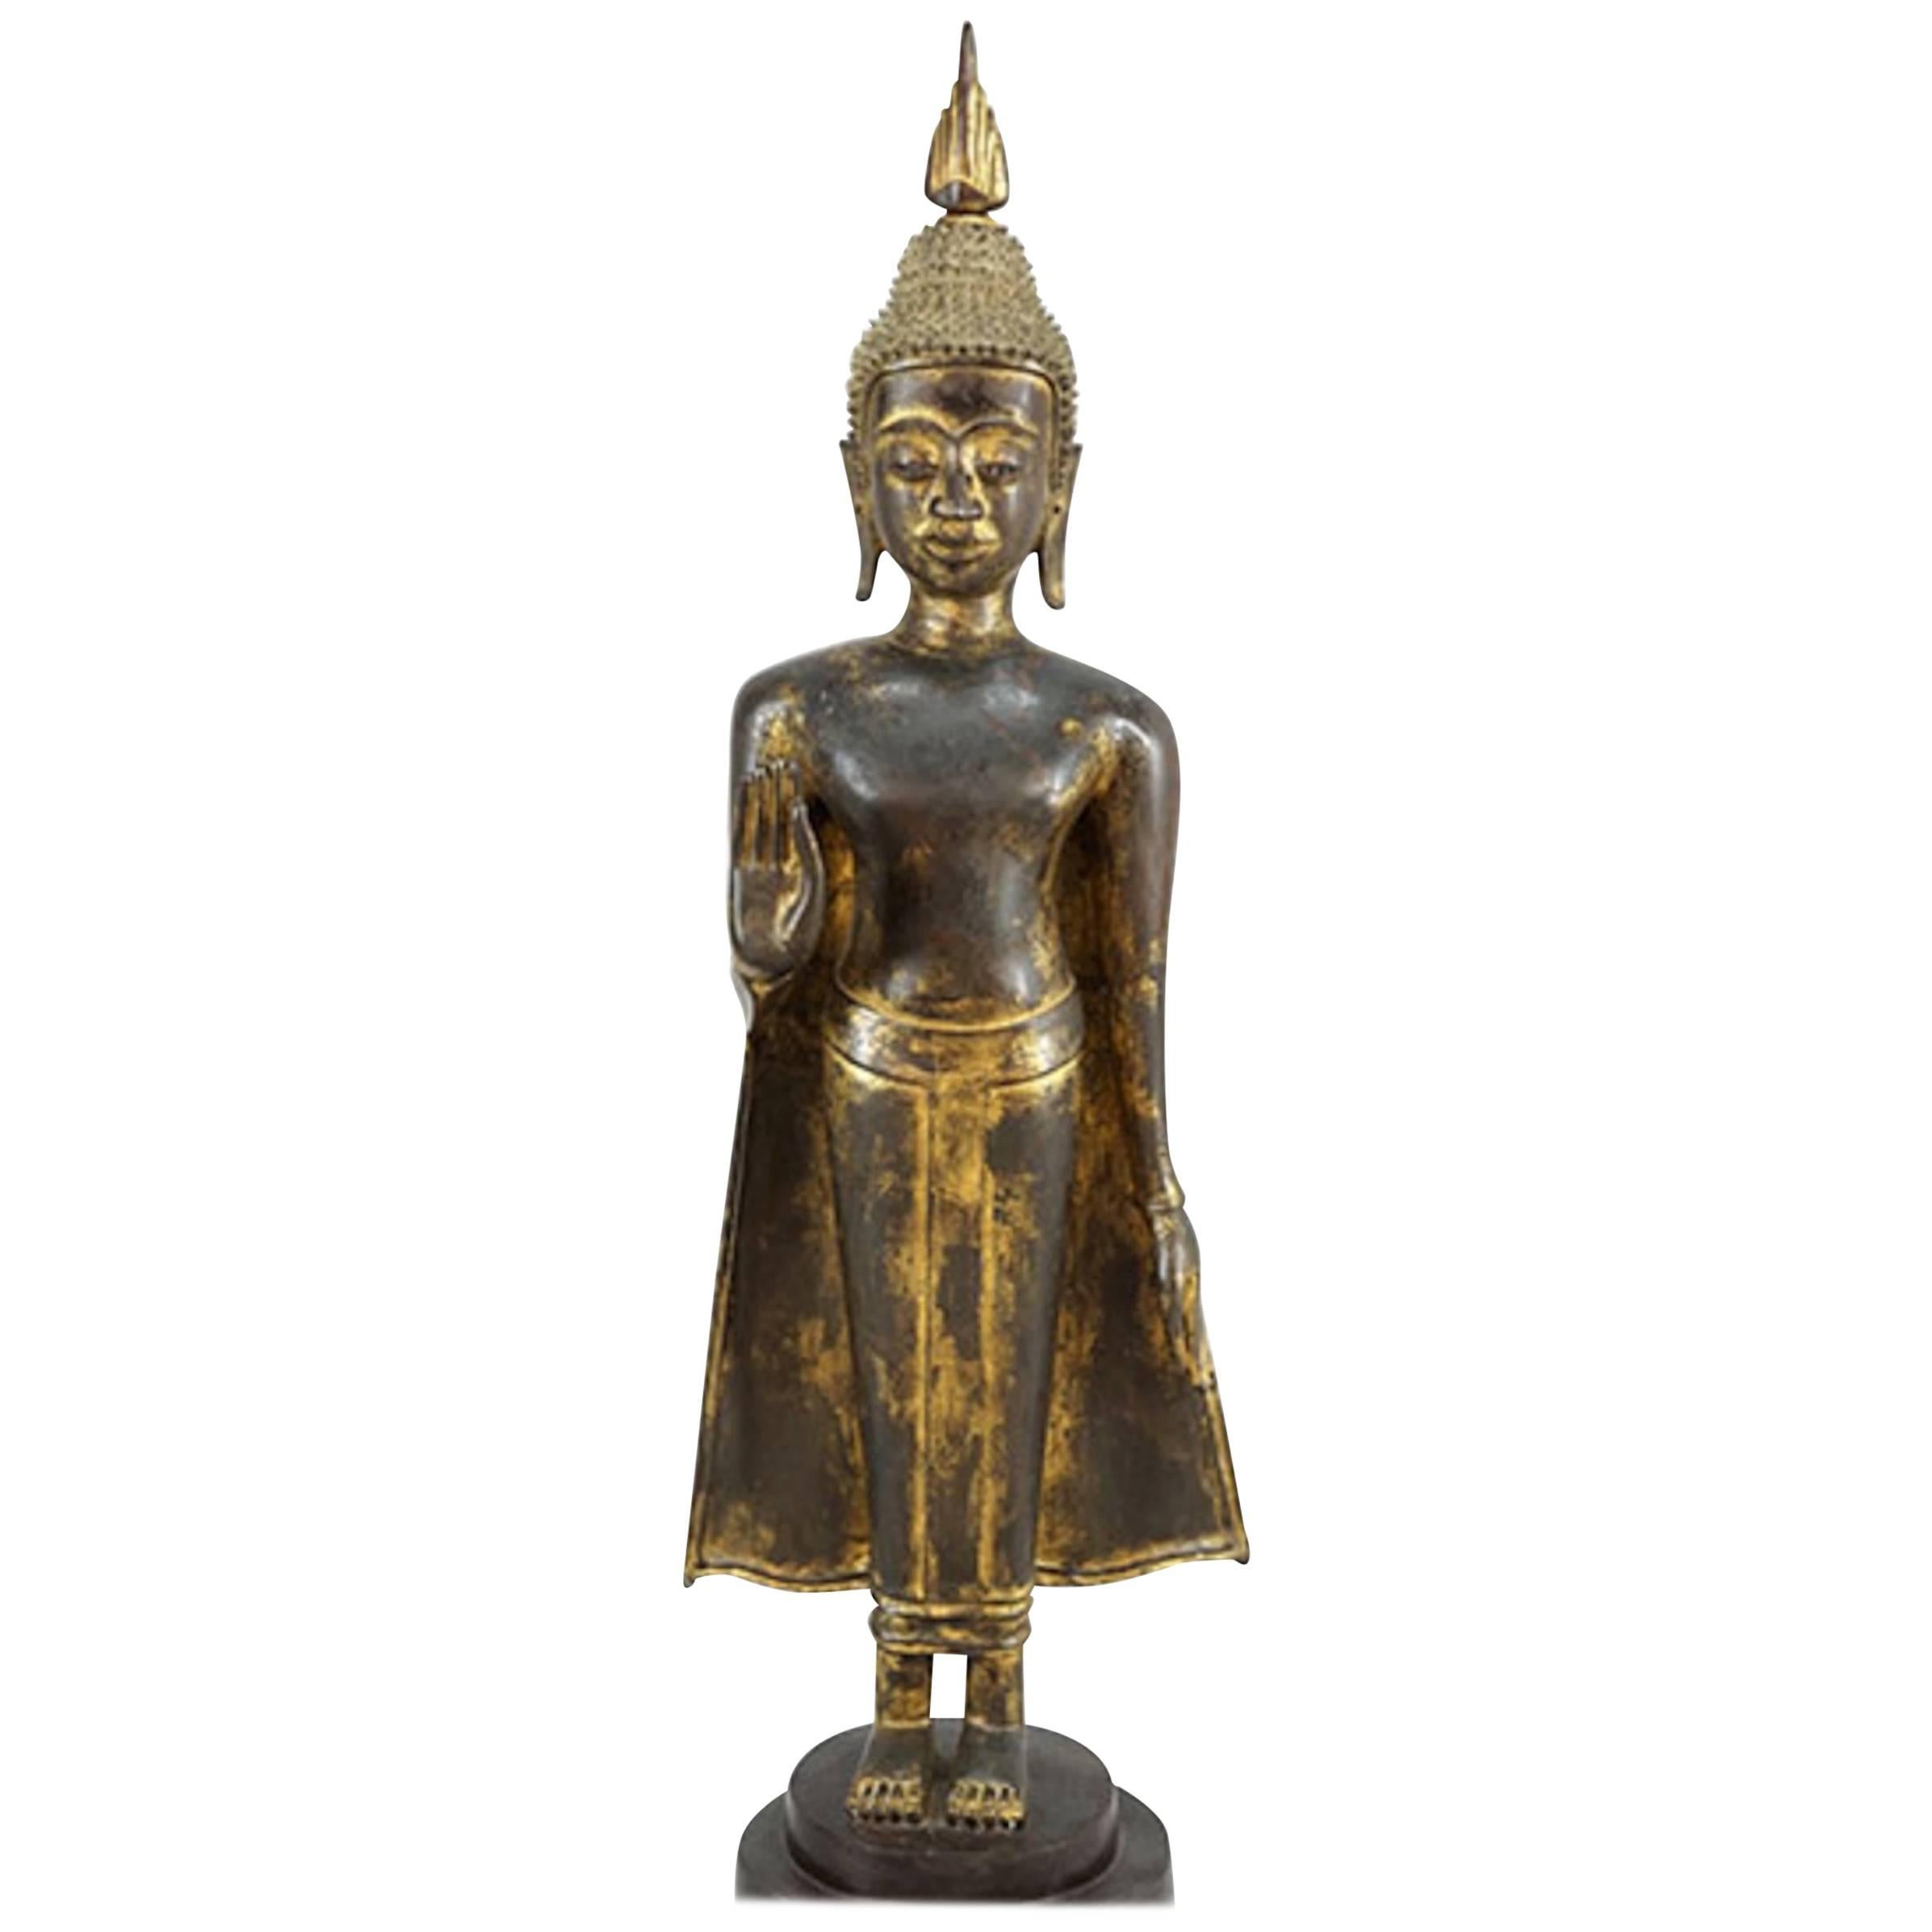 Bouddha thaïlandais du 19ème siècle en bronze avec une belle finition dorée usée et usée